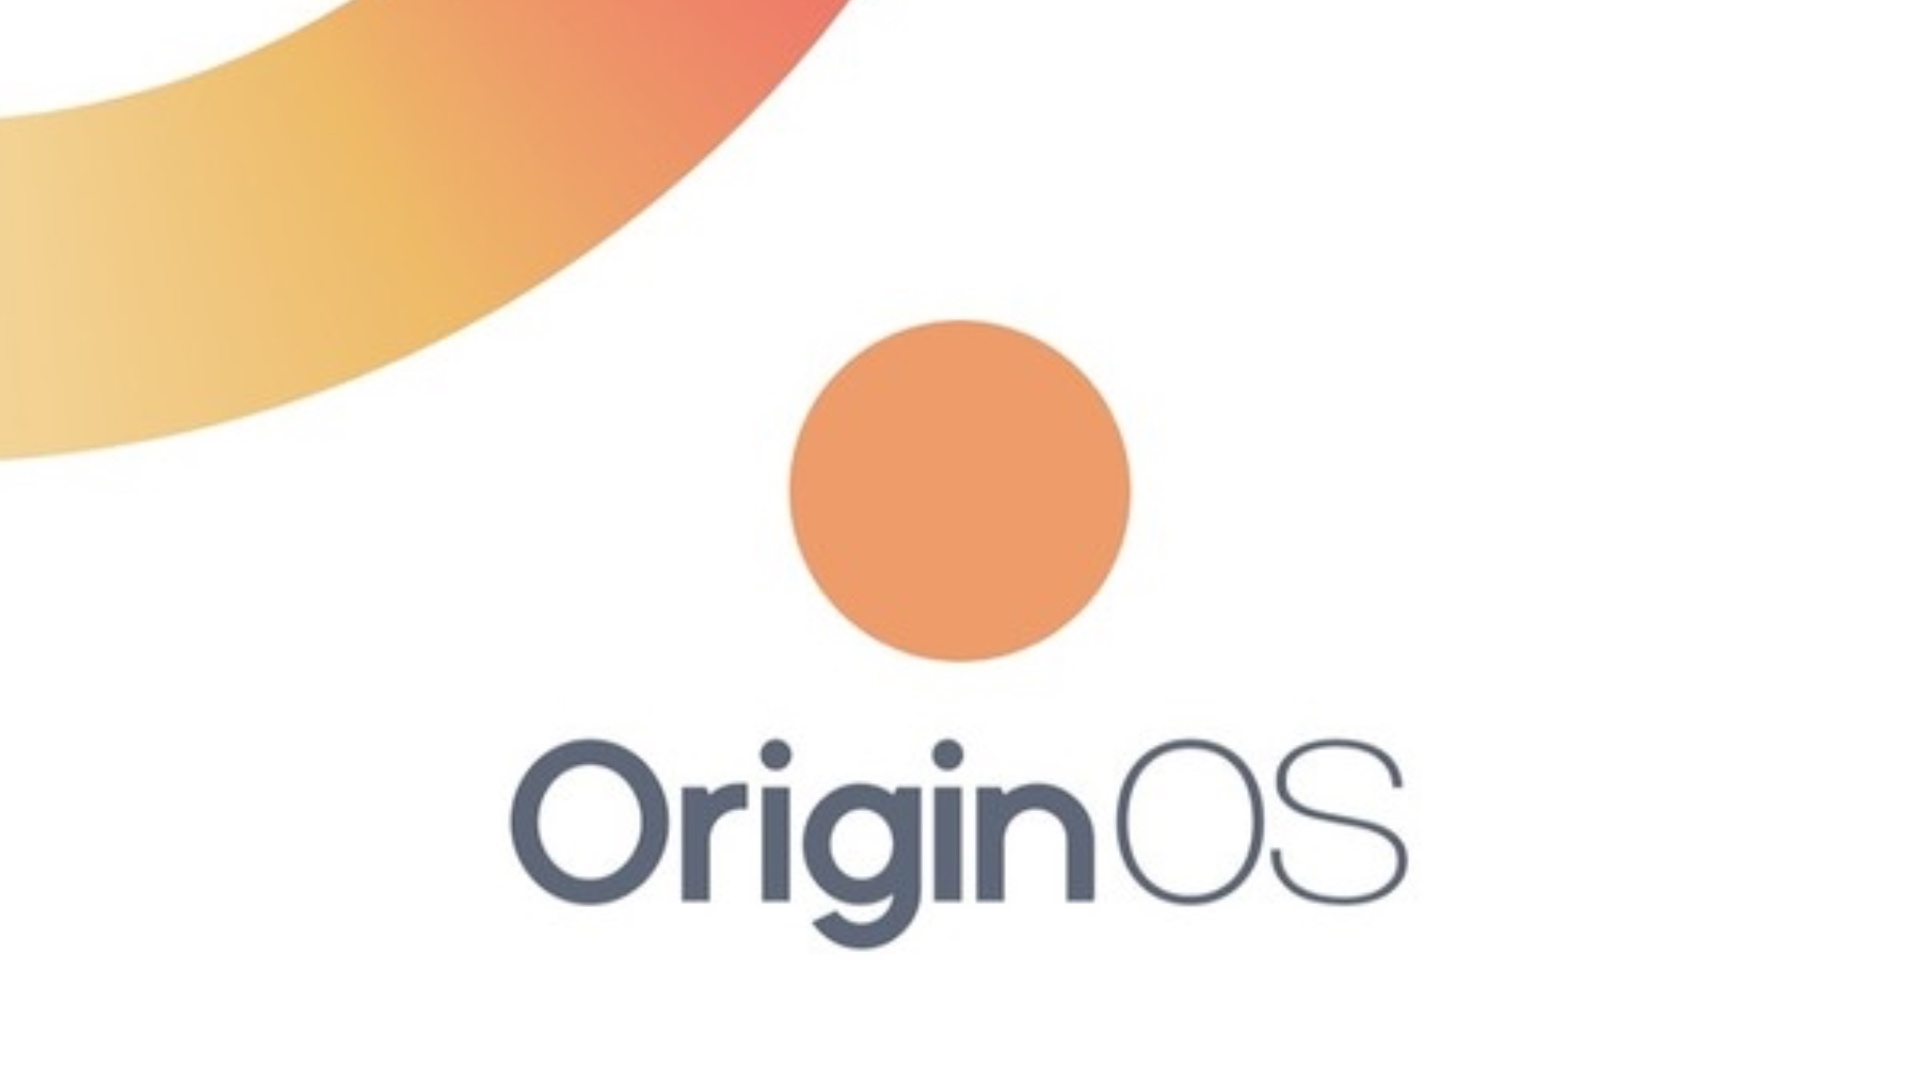 Originos. Origin os. Origin os vivo. Origin os 2.0. Origin Интерфейс.